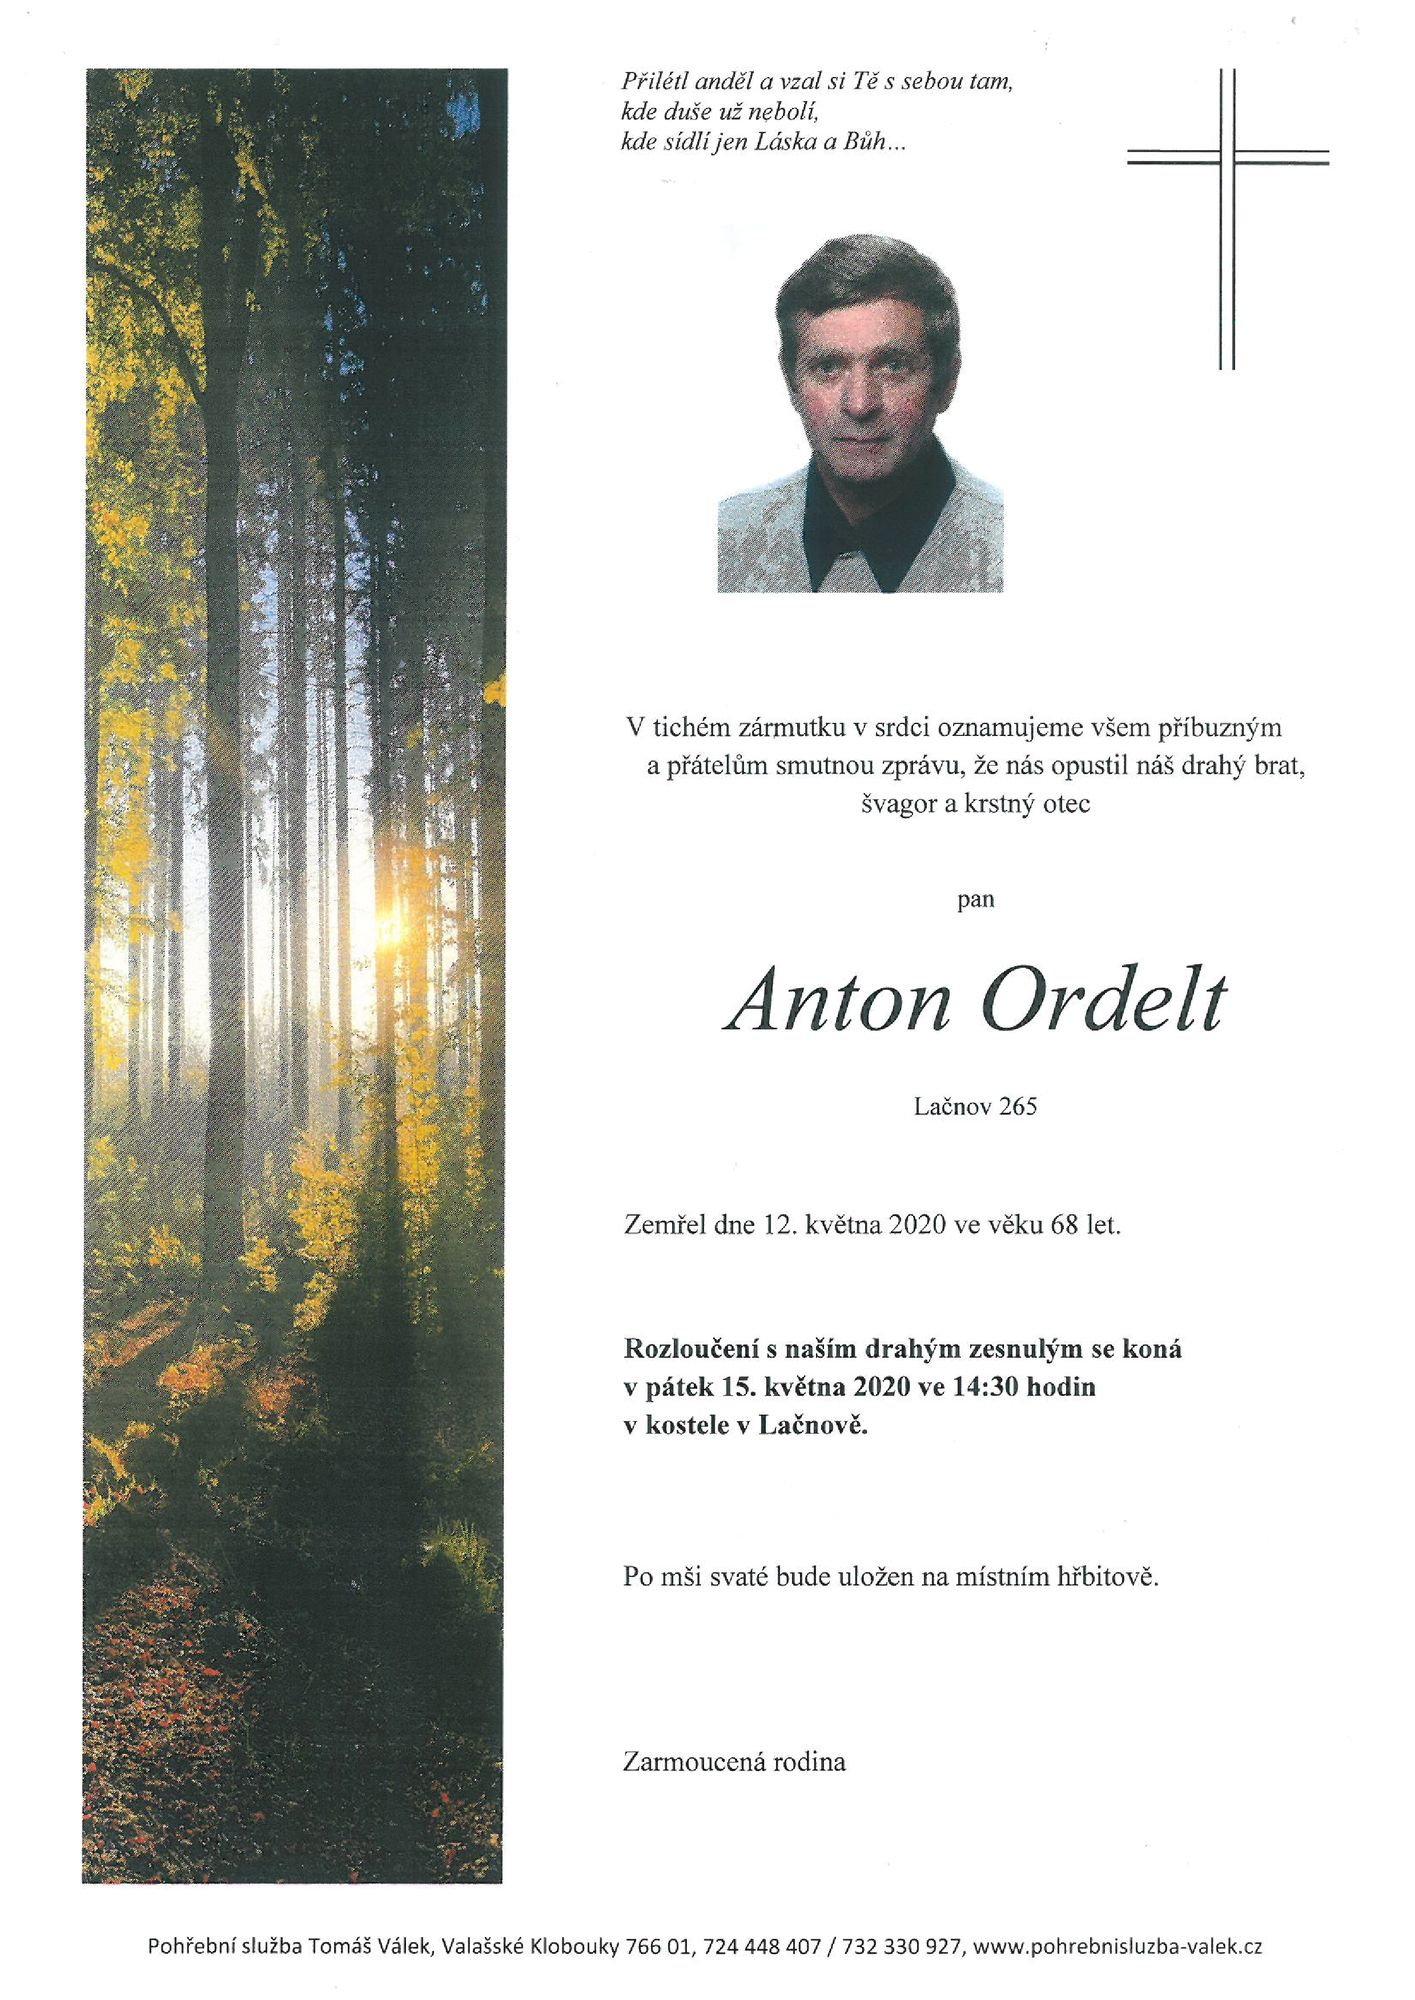 Anton Ordelt